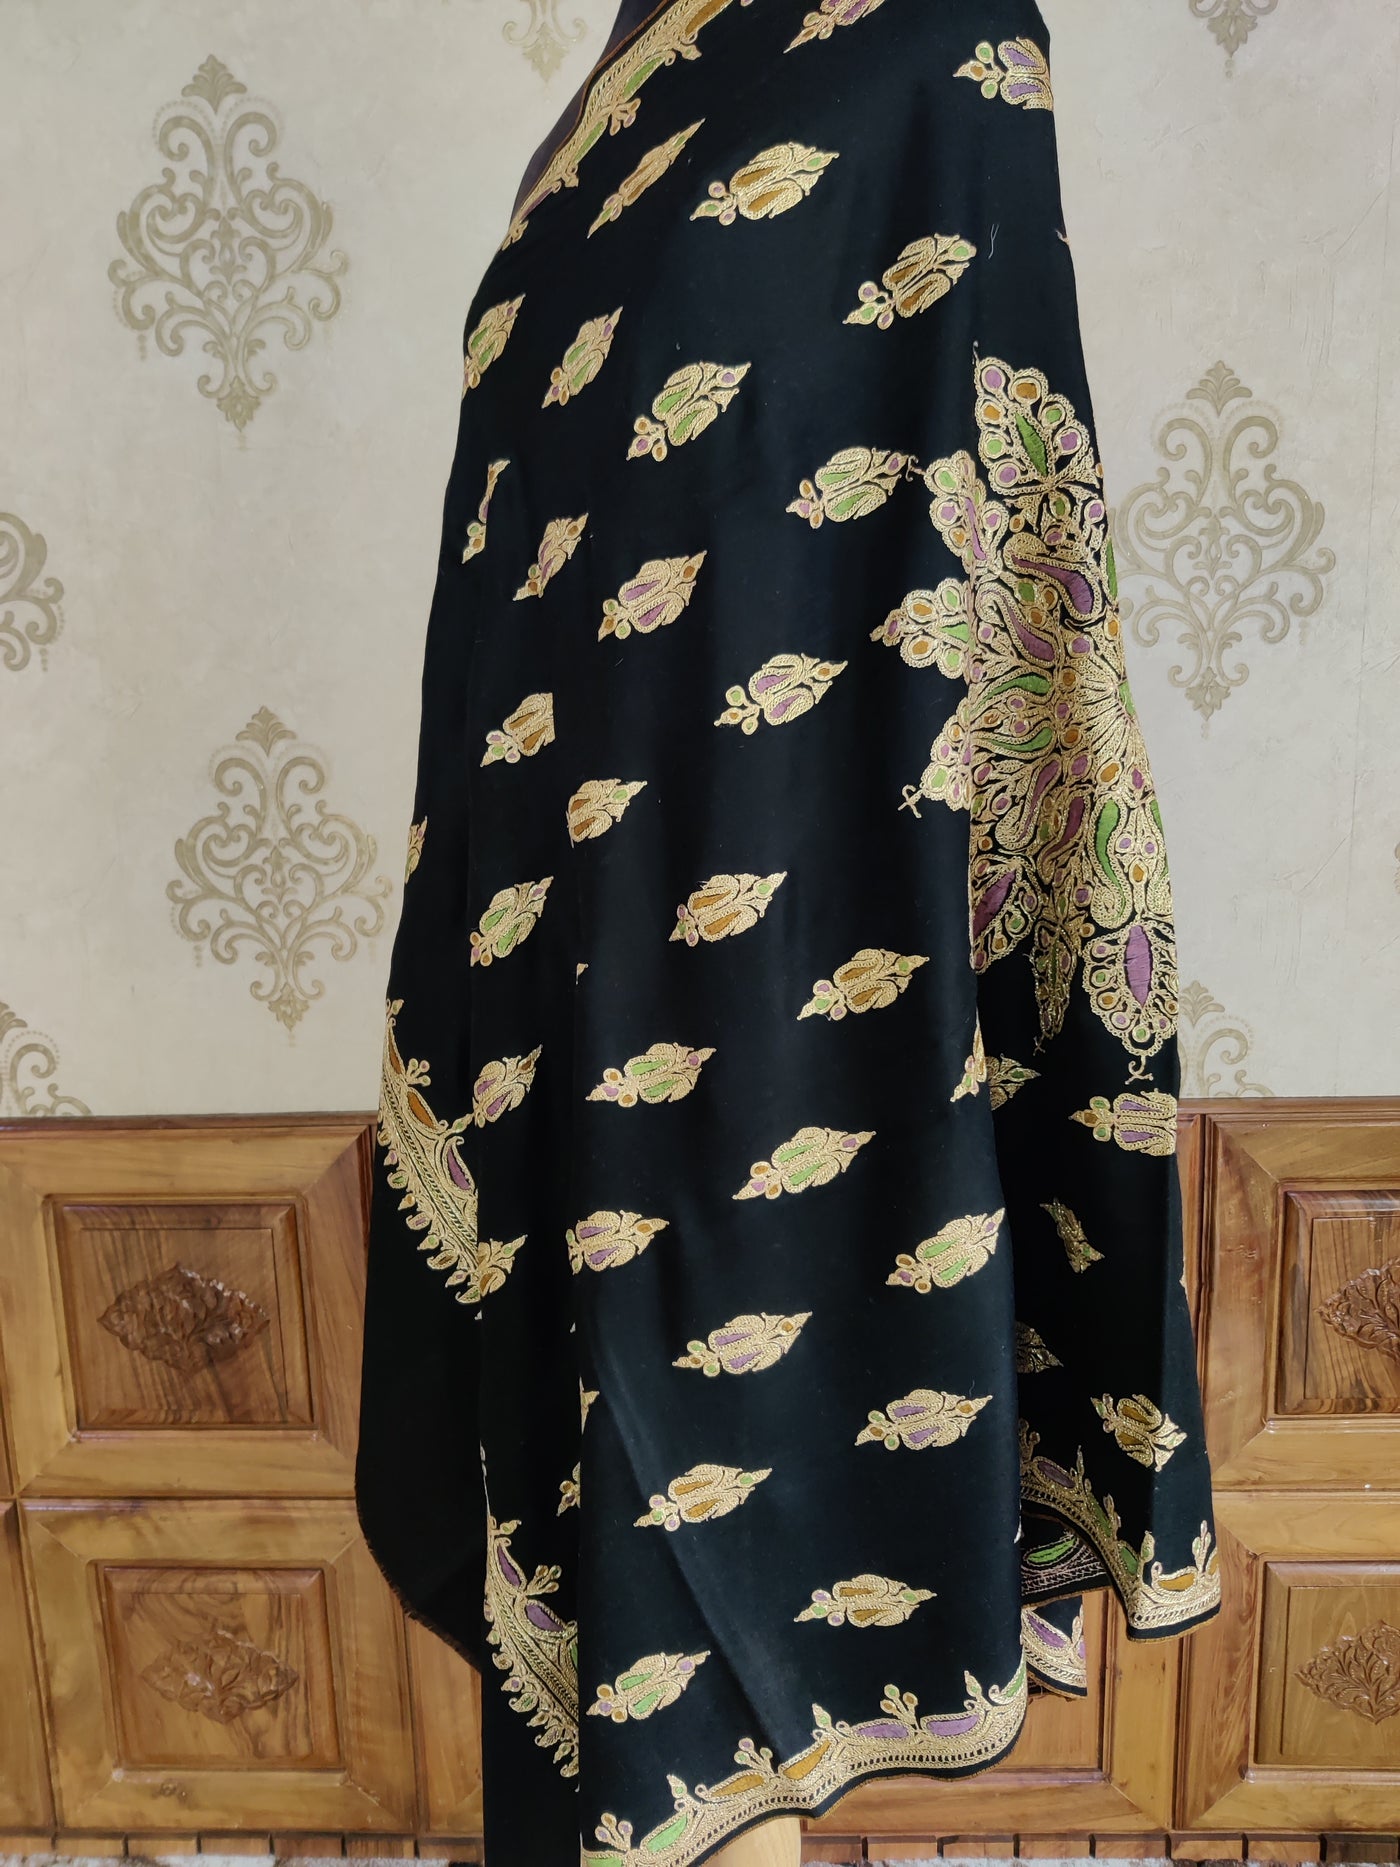 Zamurd-e-Zar Pure Pashmina Shawl with Hand Tilla and Sozni Embroidery